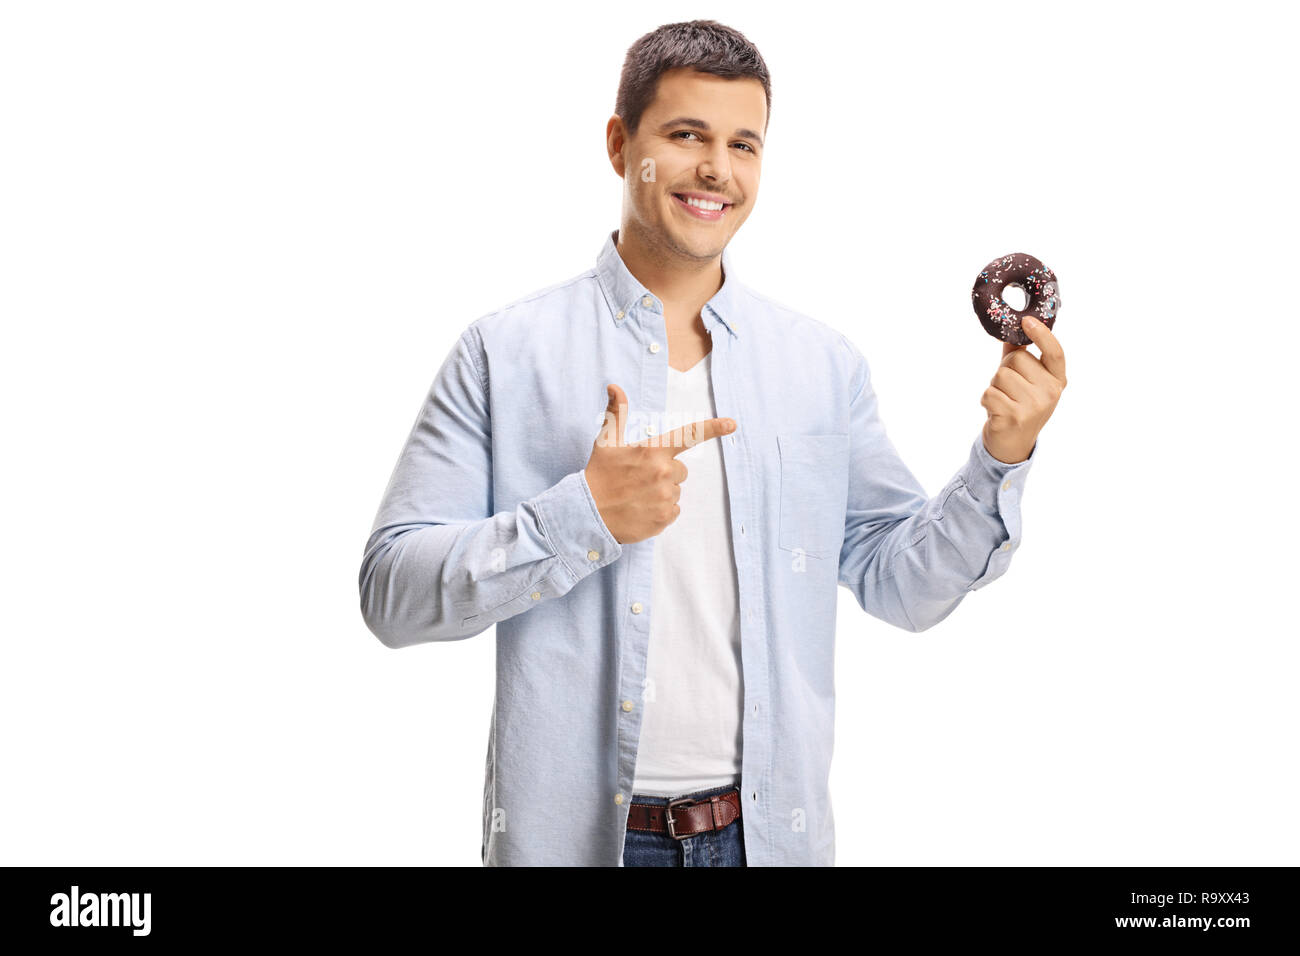 Lächelnden jungen Mann, der auf einen Donut in der Hand auf weißem Hintergrund Stockfoto